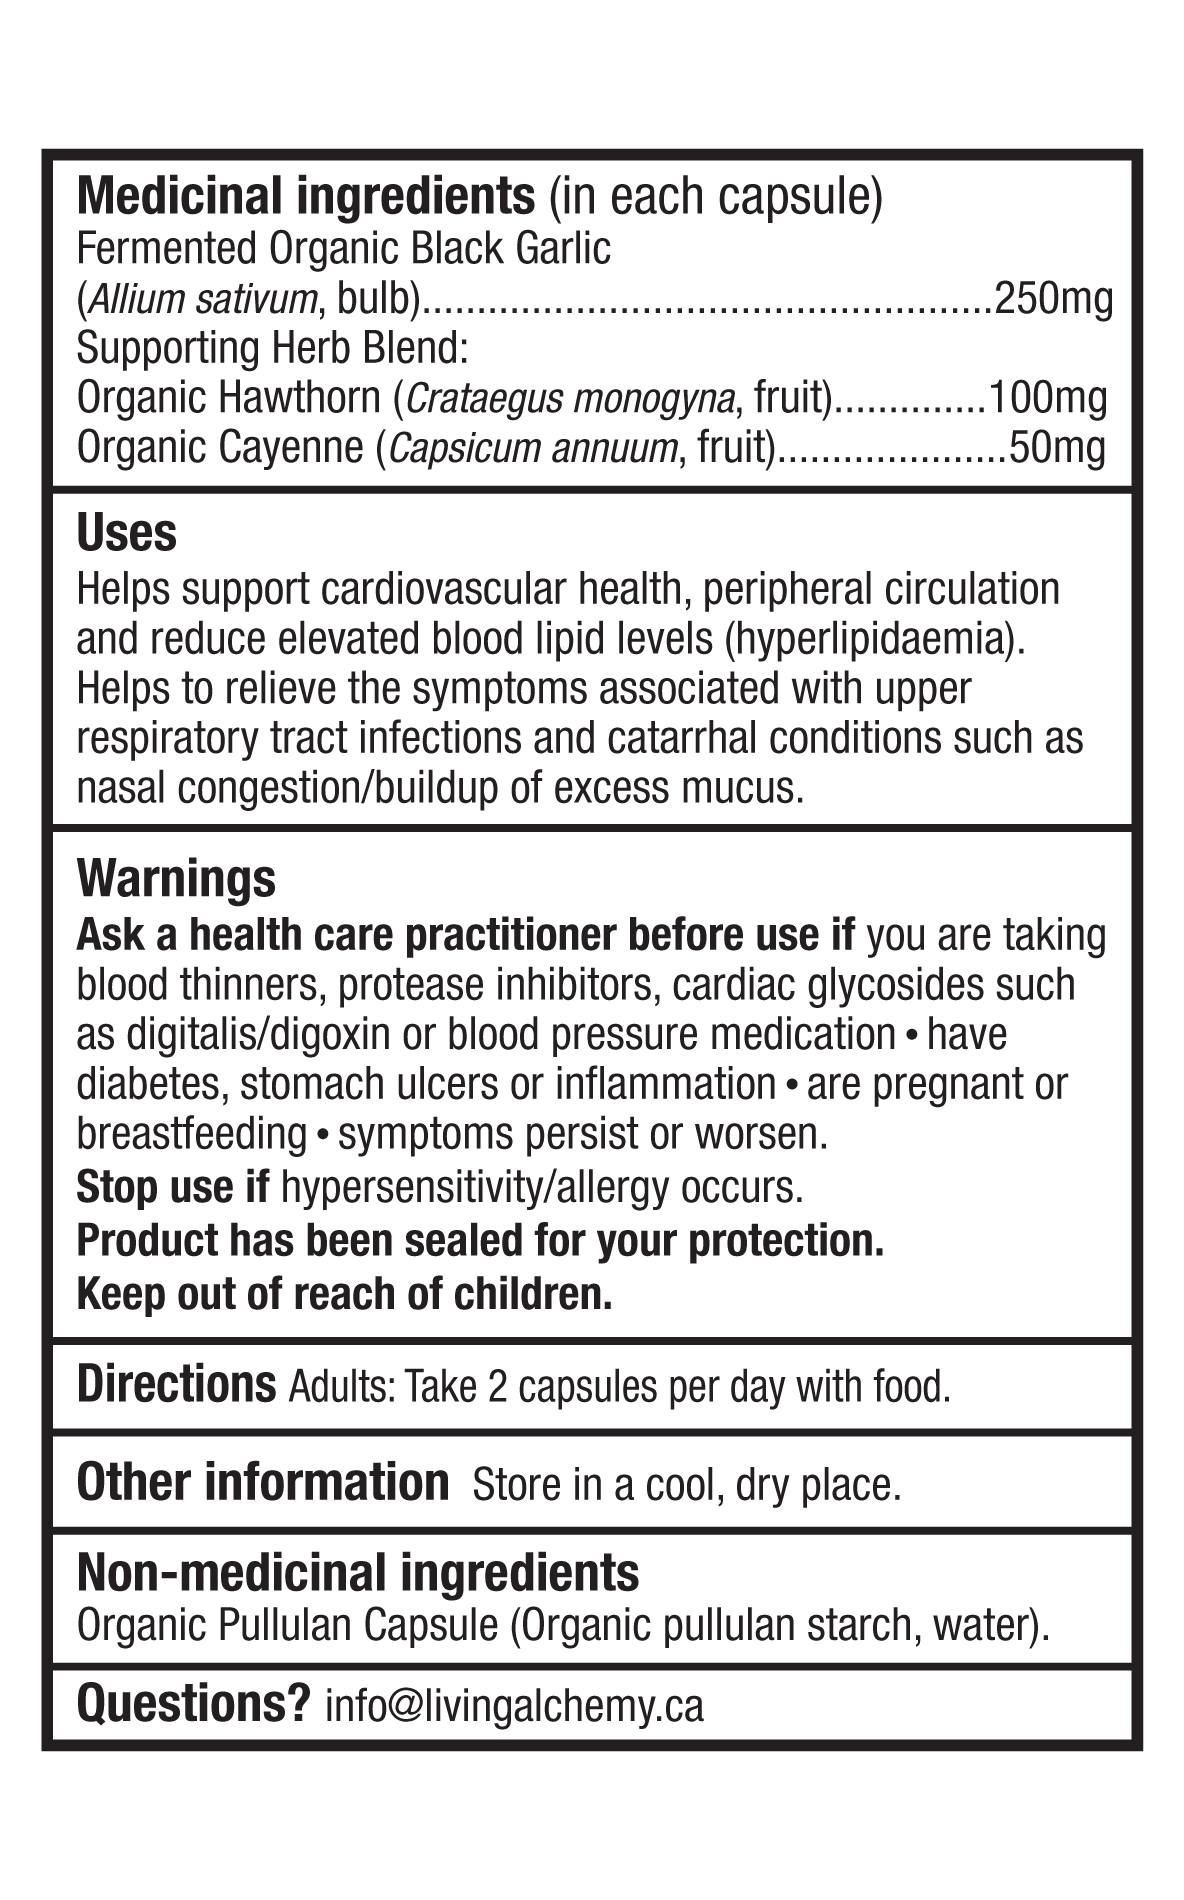 Étiquetage nutritionnel de l'ail noir